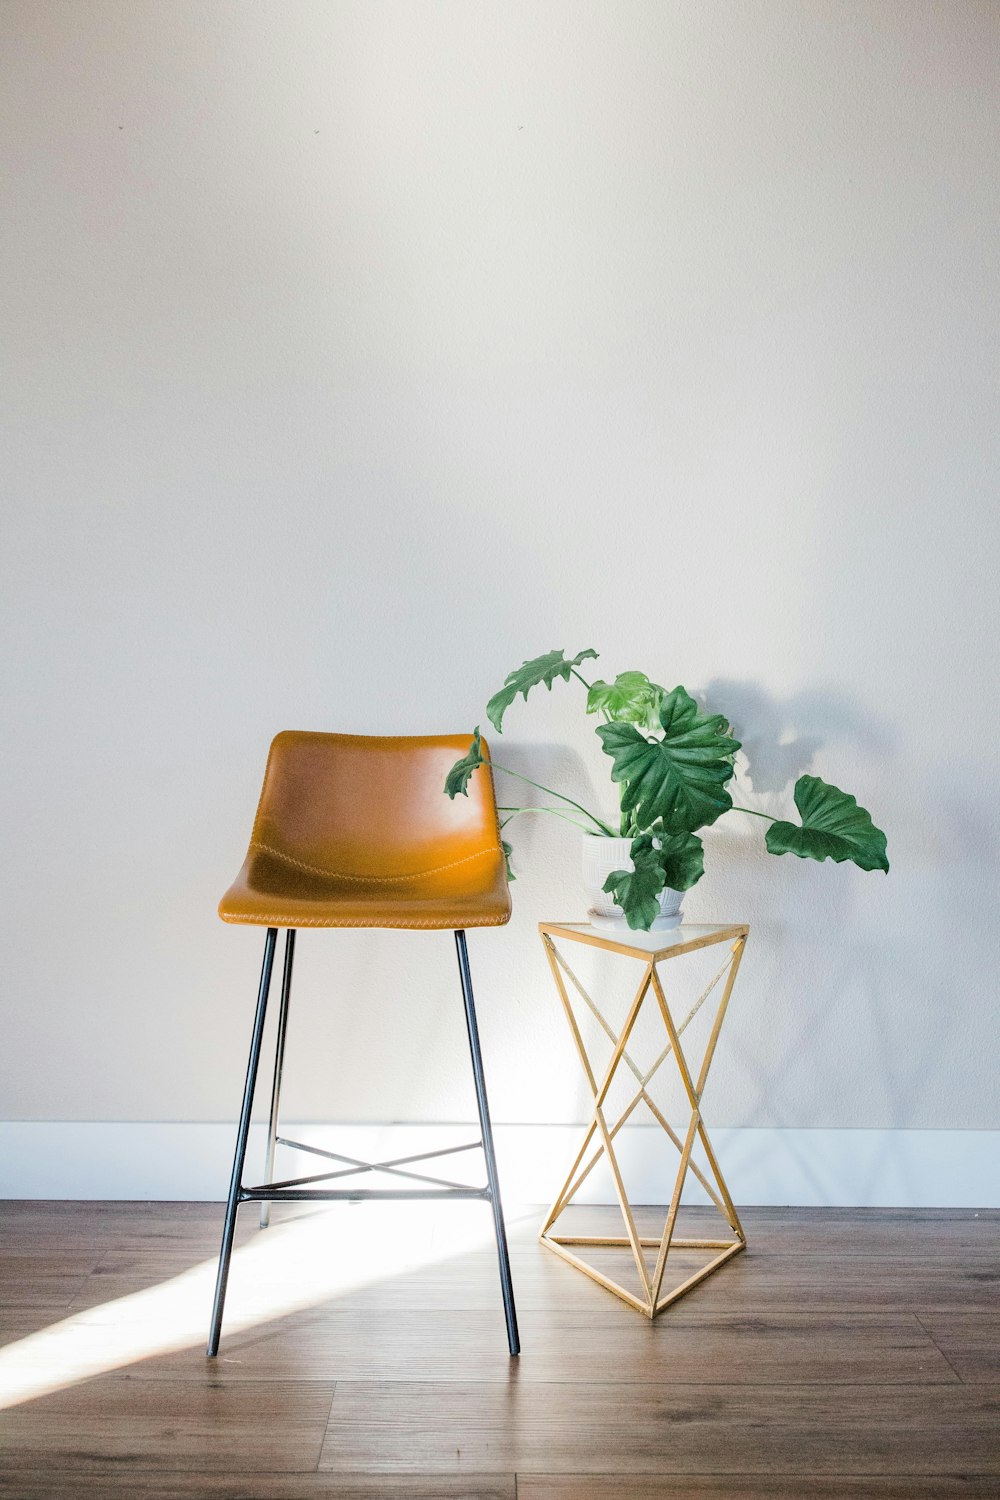 Una silla junto a una planta en un suelo de madera